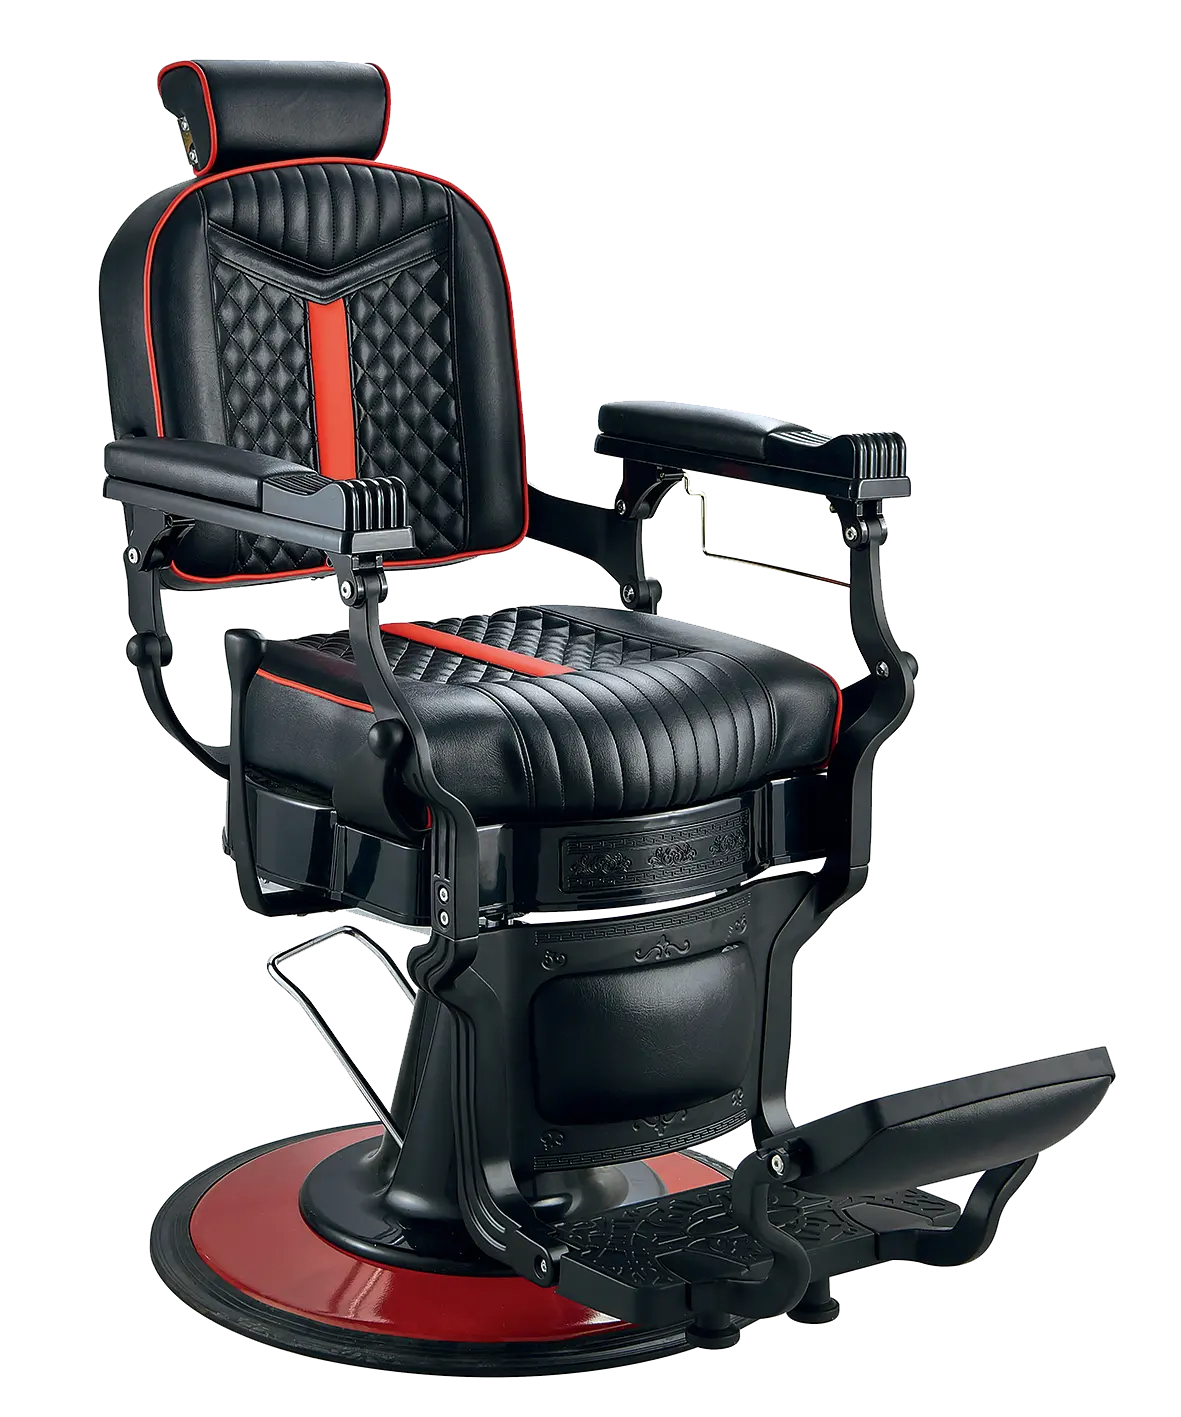 Kursi Salon dasar rambut cuci seluler aluminium, kursi Salon rambut, kursi persegi hitam, kursi tukang cukur dasar merah